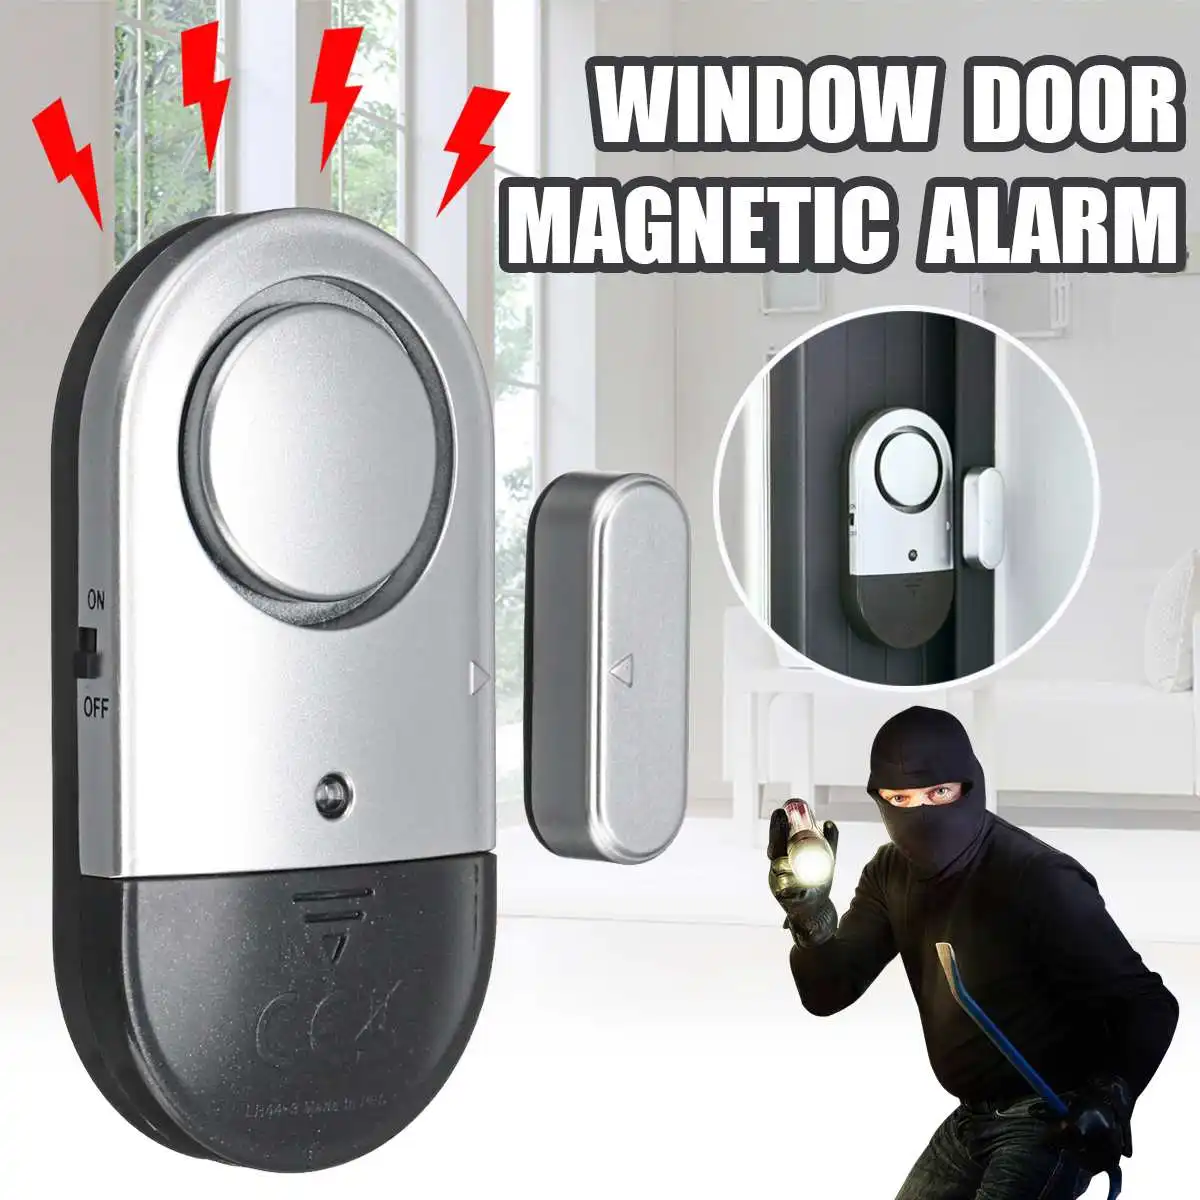 120 дБ большой звуковой сигнал магнитный датчик беспроводной для дома для окна двери Охранная сигнализация для домашней квартиры офисная безопасность